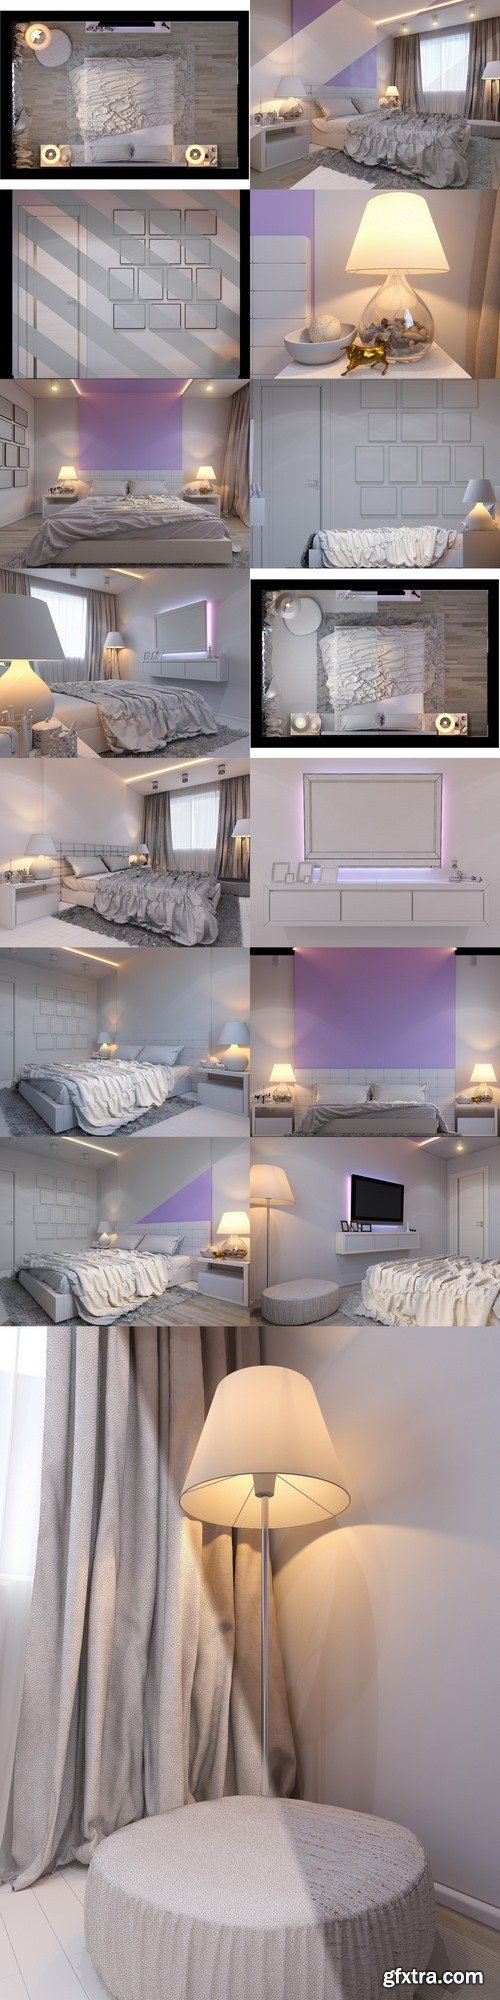 3d rendering of bedroom interior design